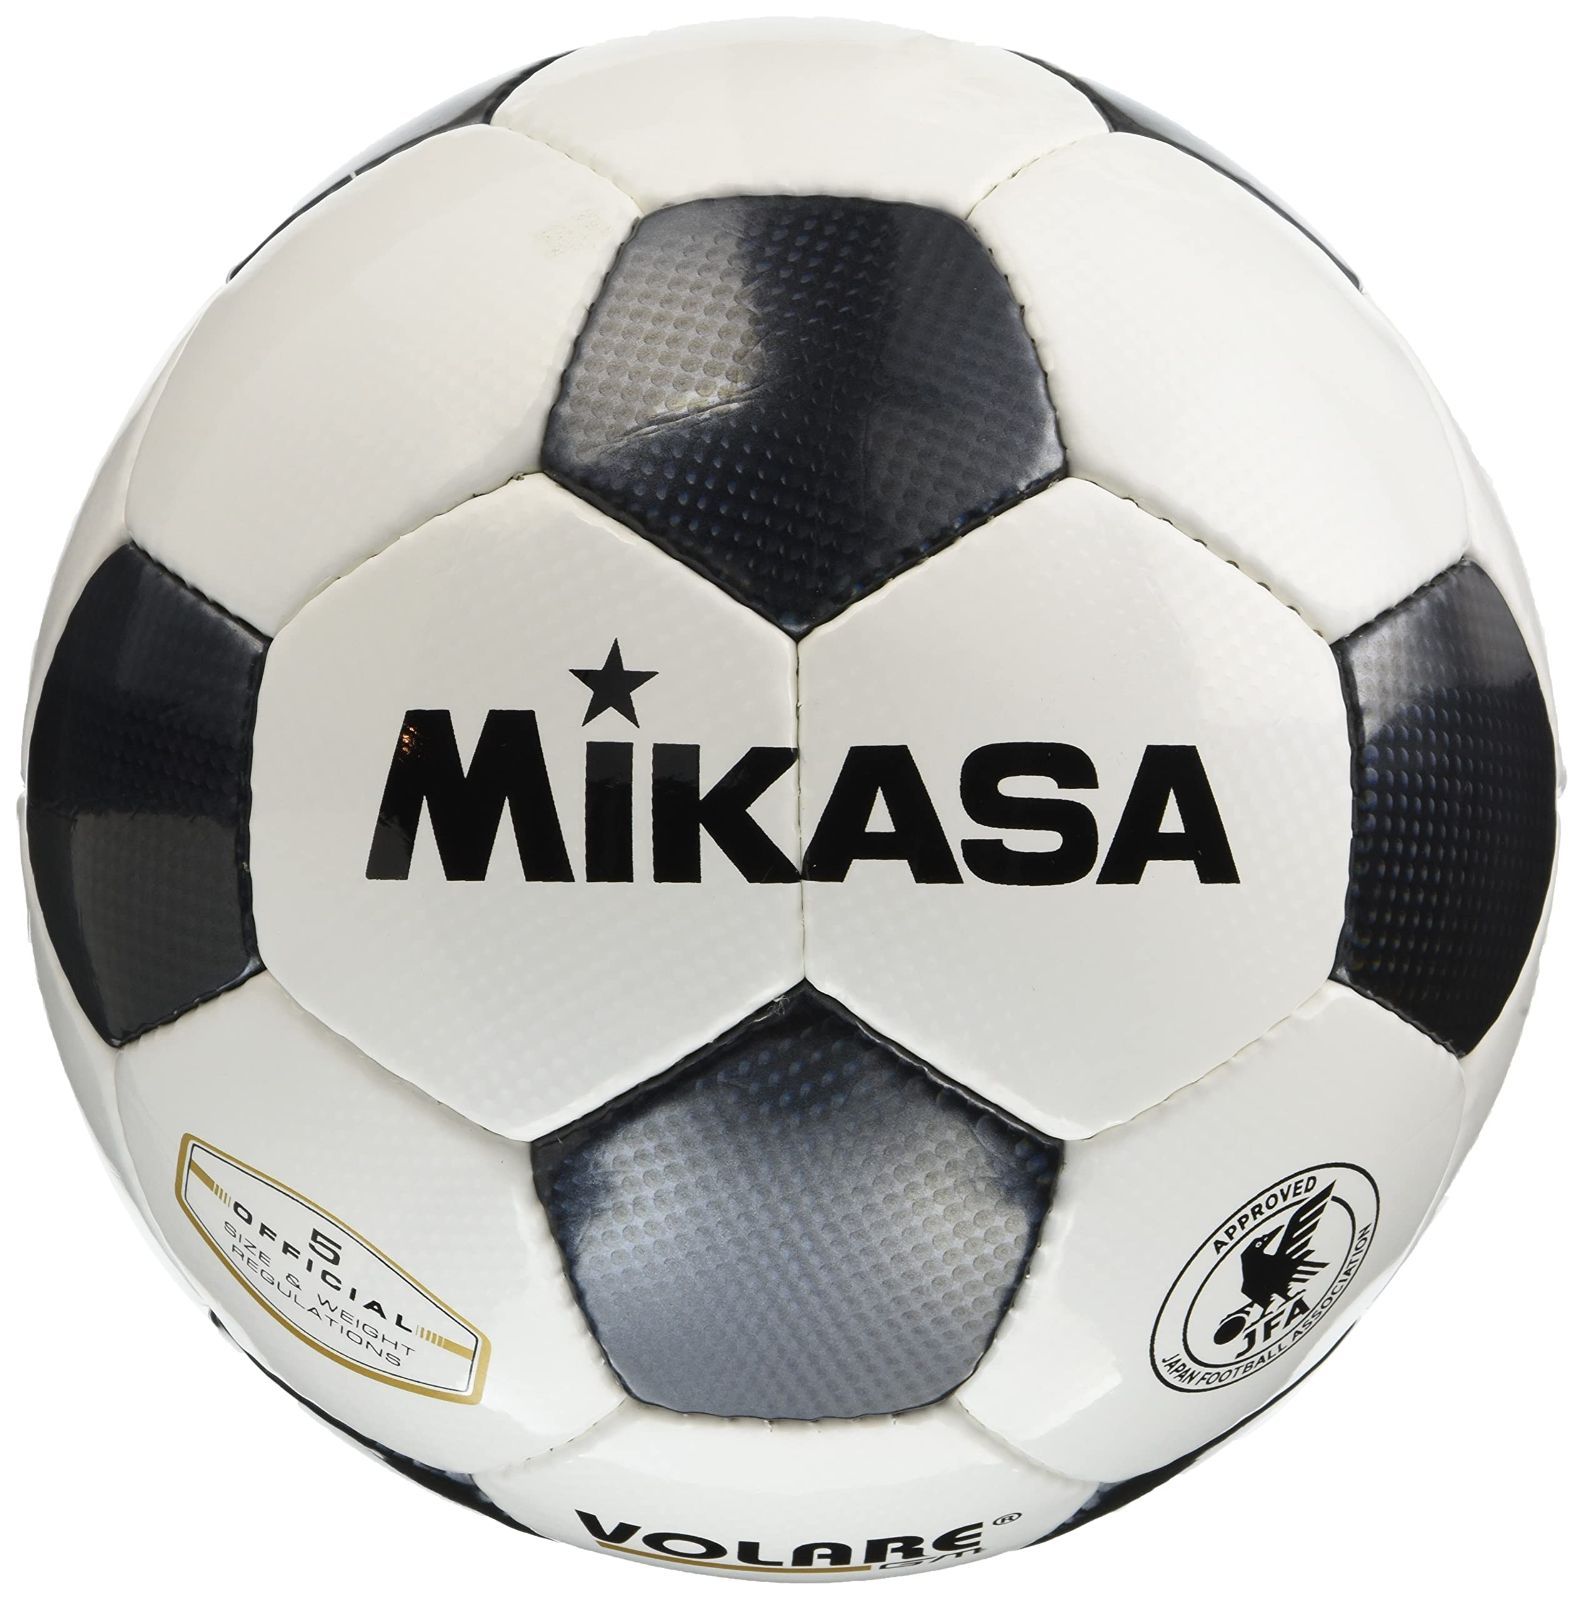 ミカサ(MIKASA) サッカーボール 日本サッカー協会 検定球 5号 (一般・大学・高生・中学生用) 手縫いボール SVC5011  推奨内圧0.8(kgf/㎠)